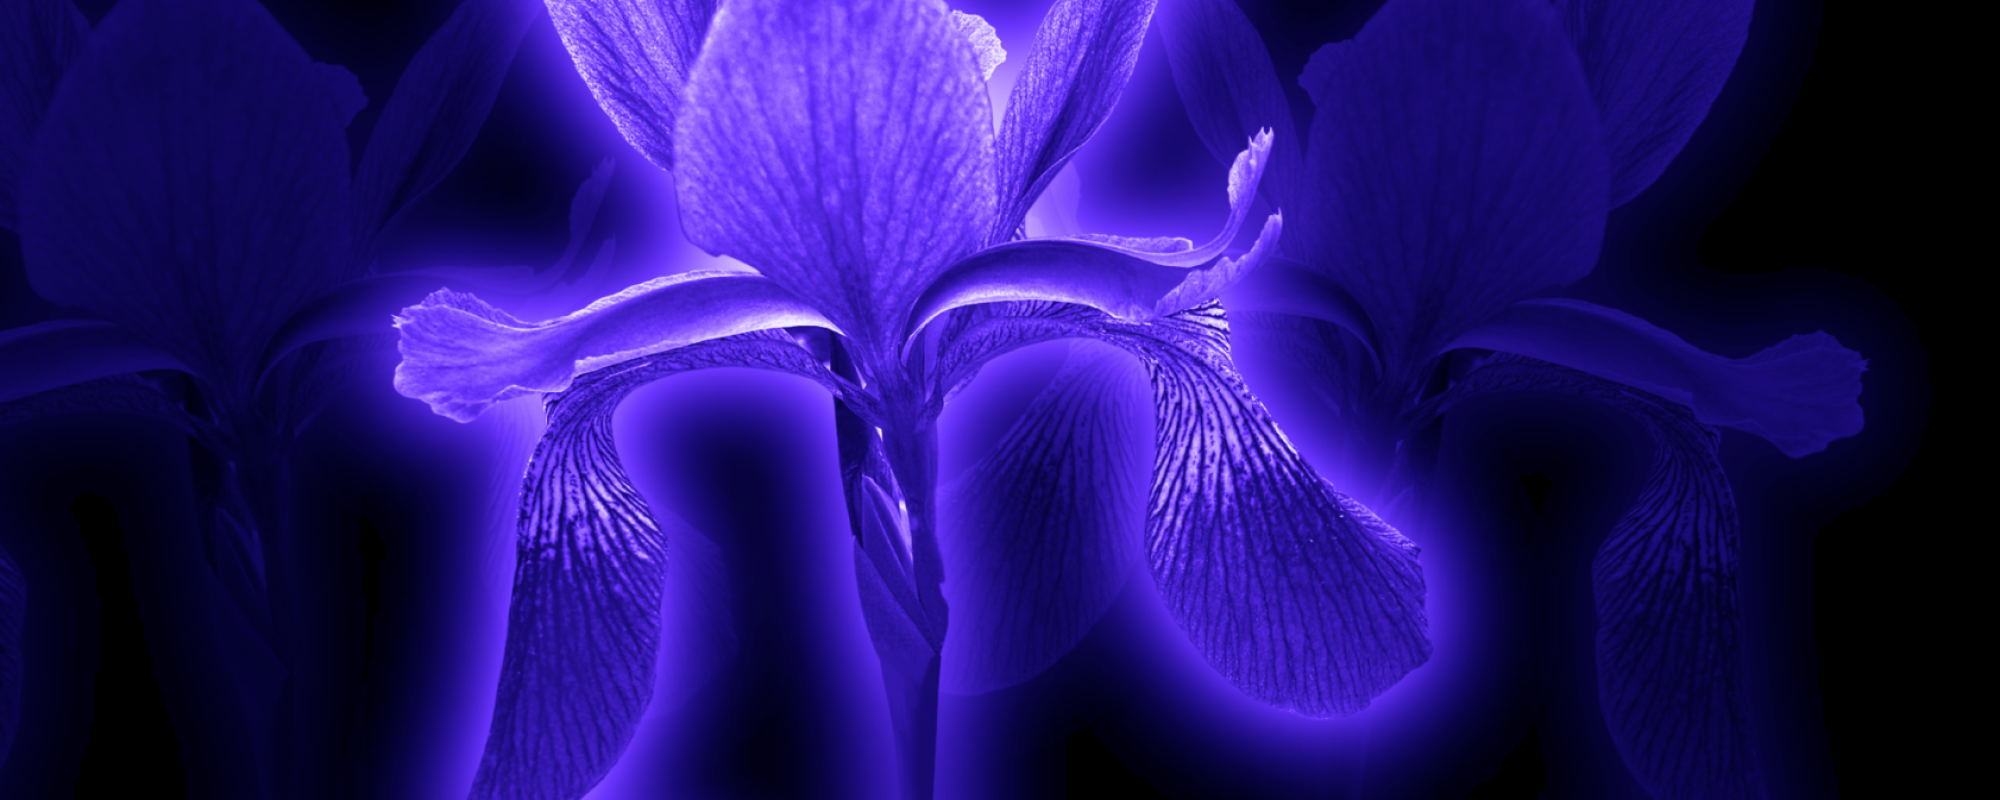 image of purple flowers on black background